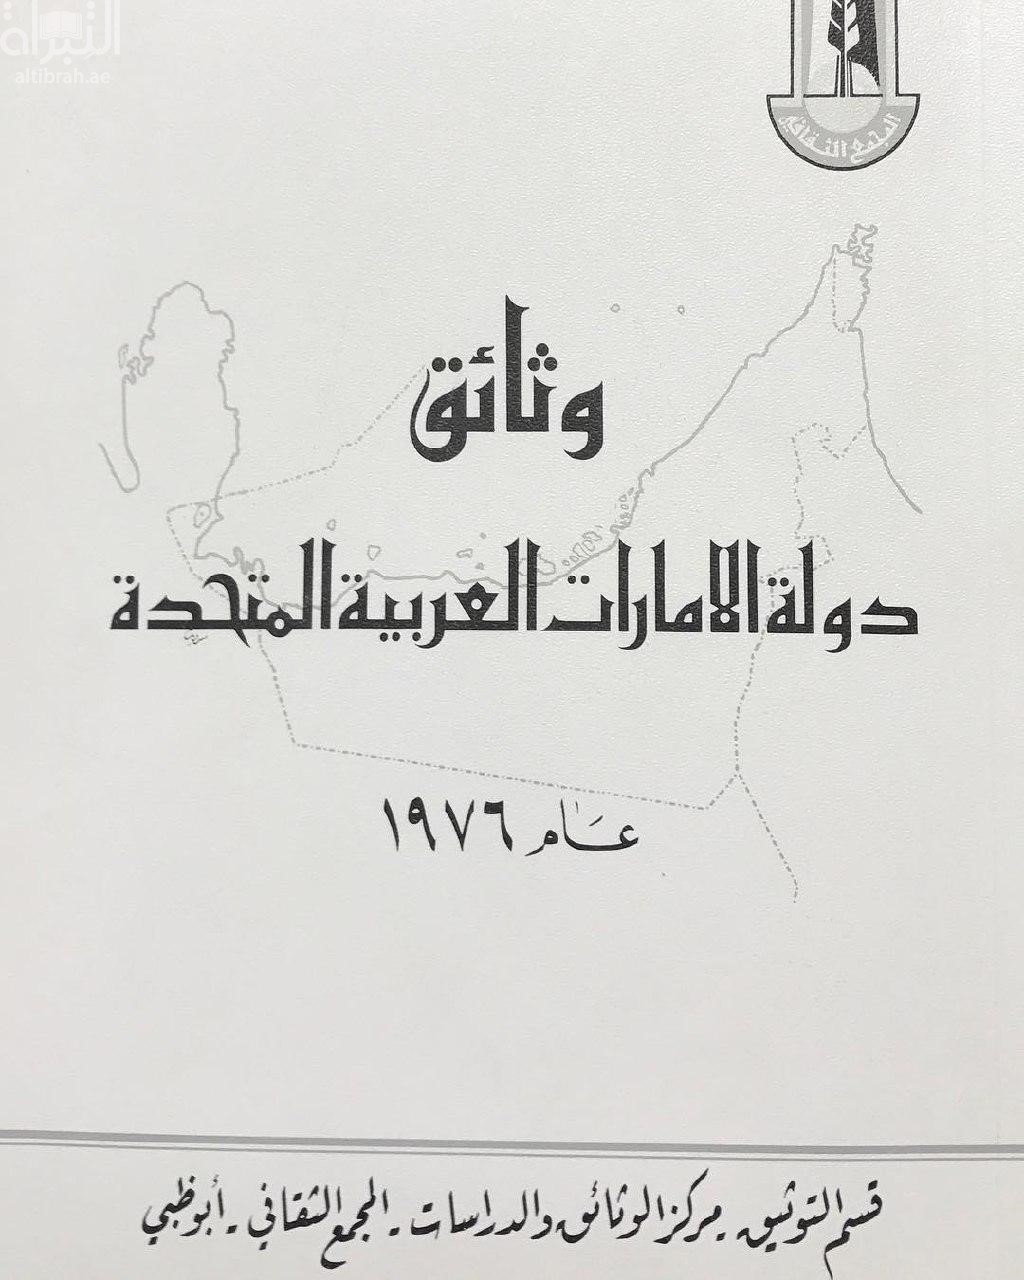 وثائق دولة الإمارات العربية المتحدة عام 1976